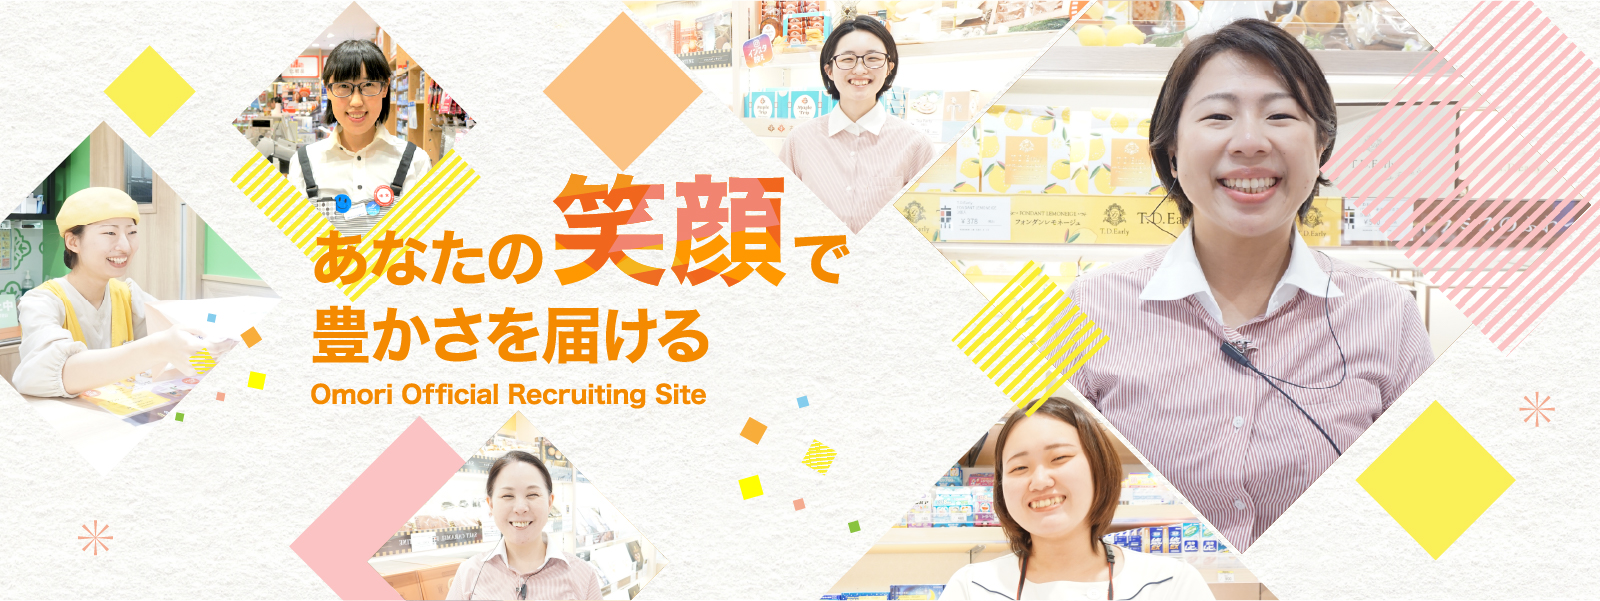 あなたの笑顔で豊かさを届ける Omori Official Recruiting Site